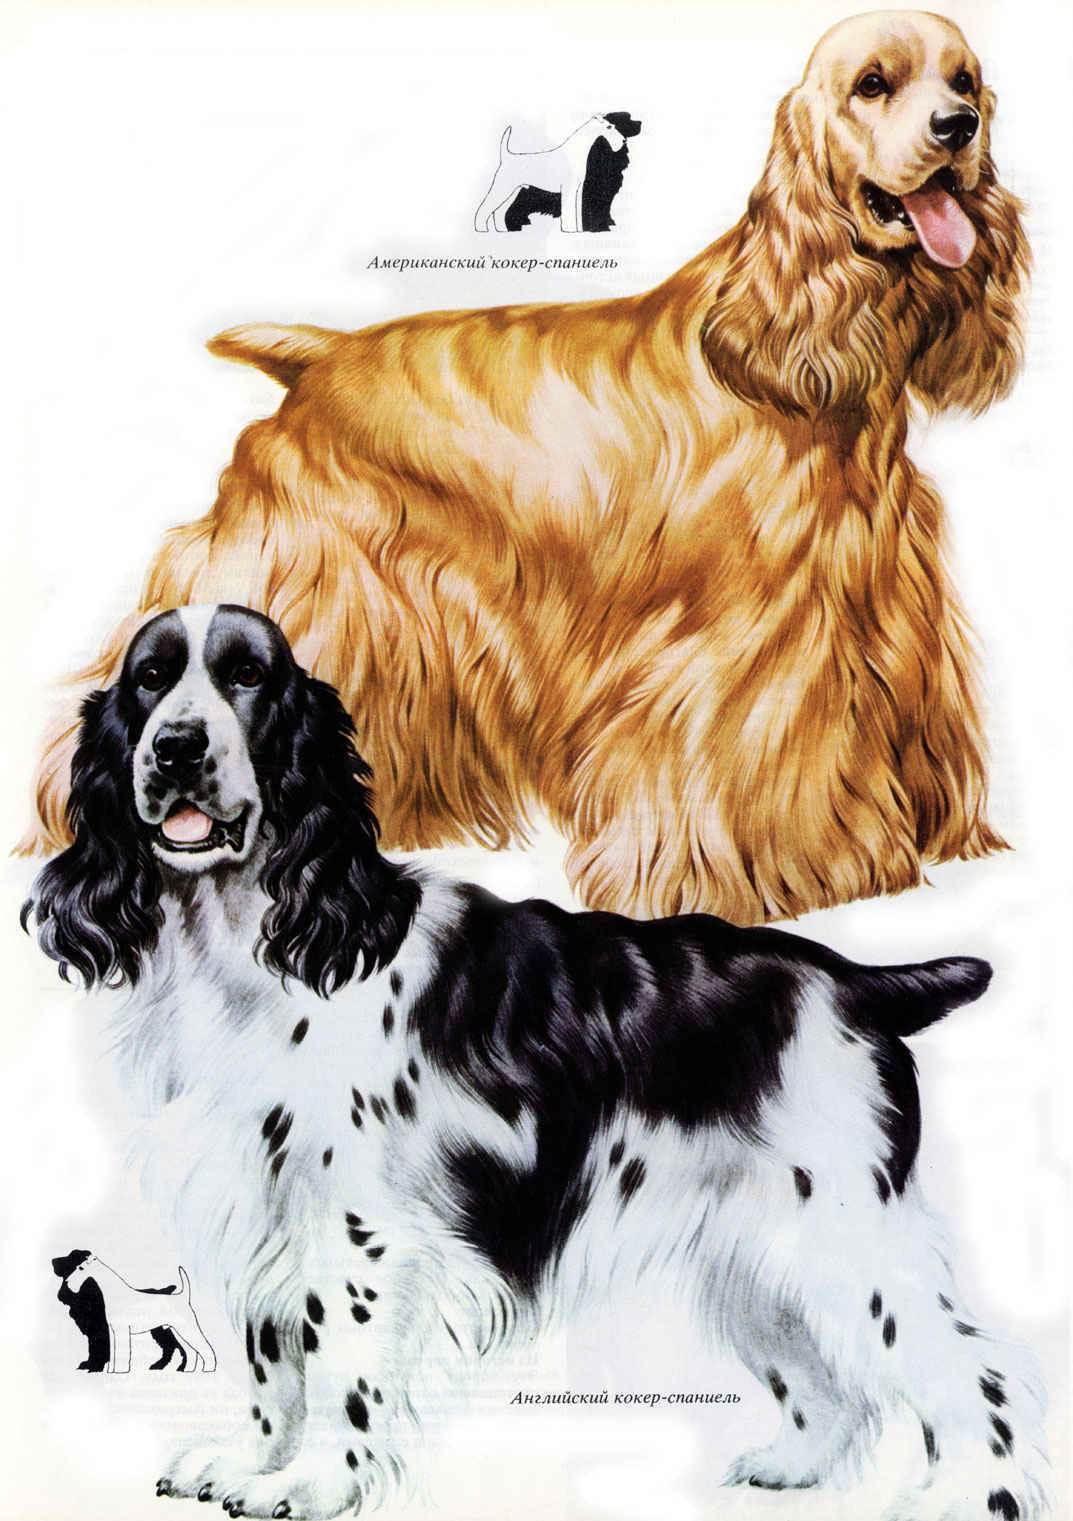 Характеристика собак породы русский спаниель и отзывы владельцев о нем